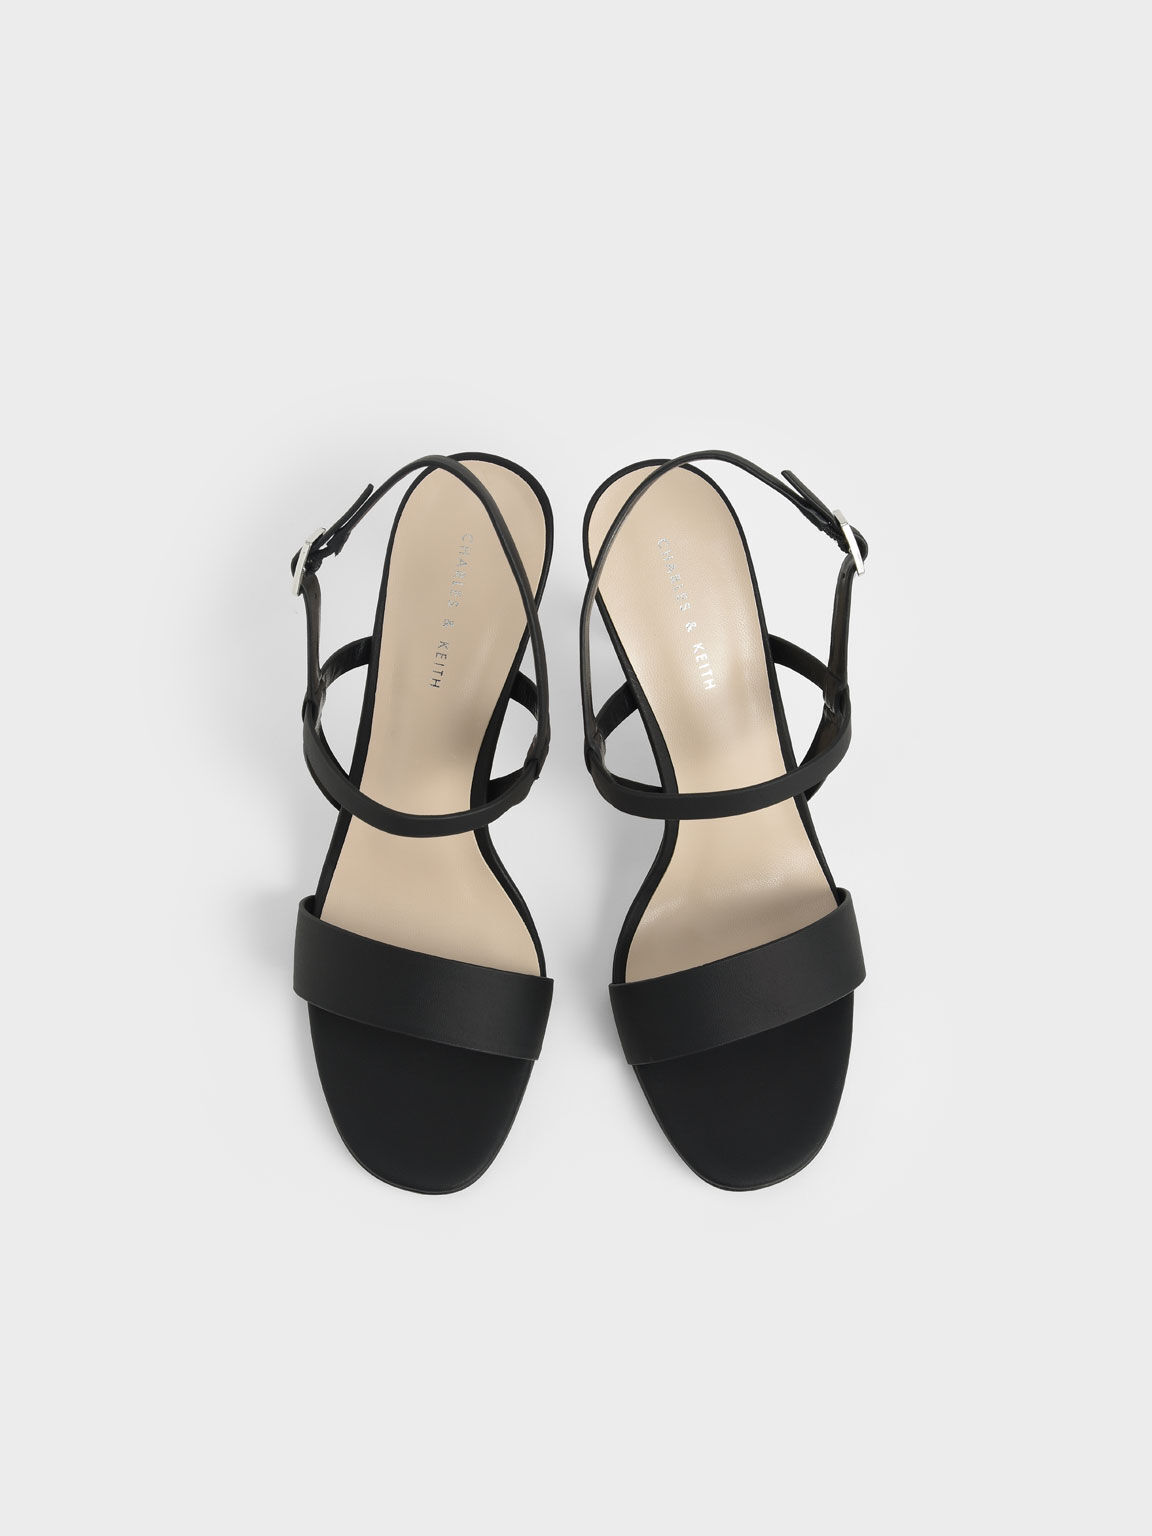 Slingback Heeled Sandals, Black, hi-res